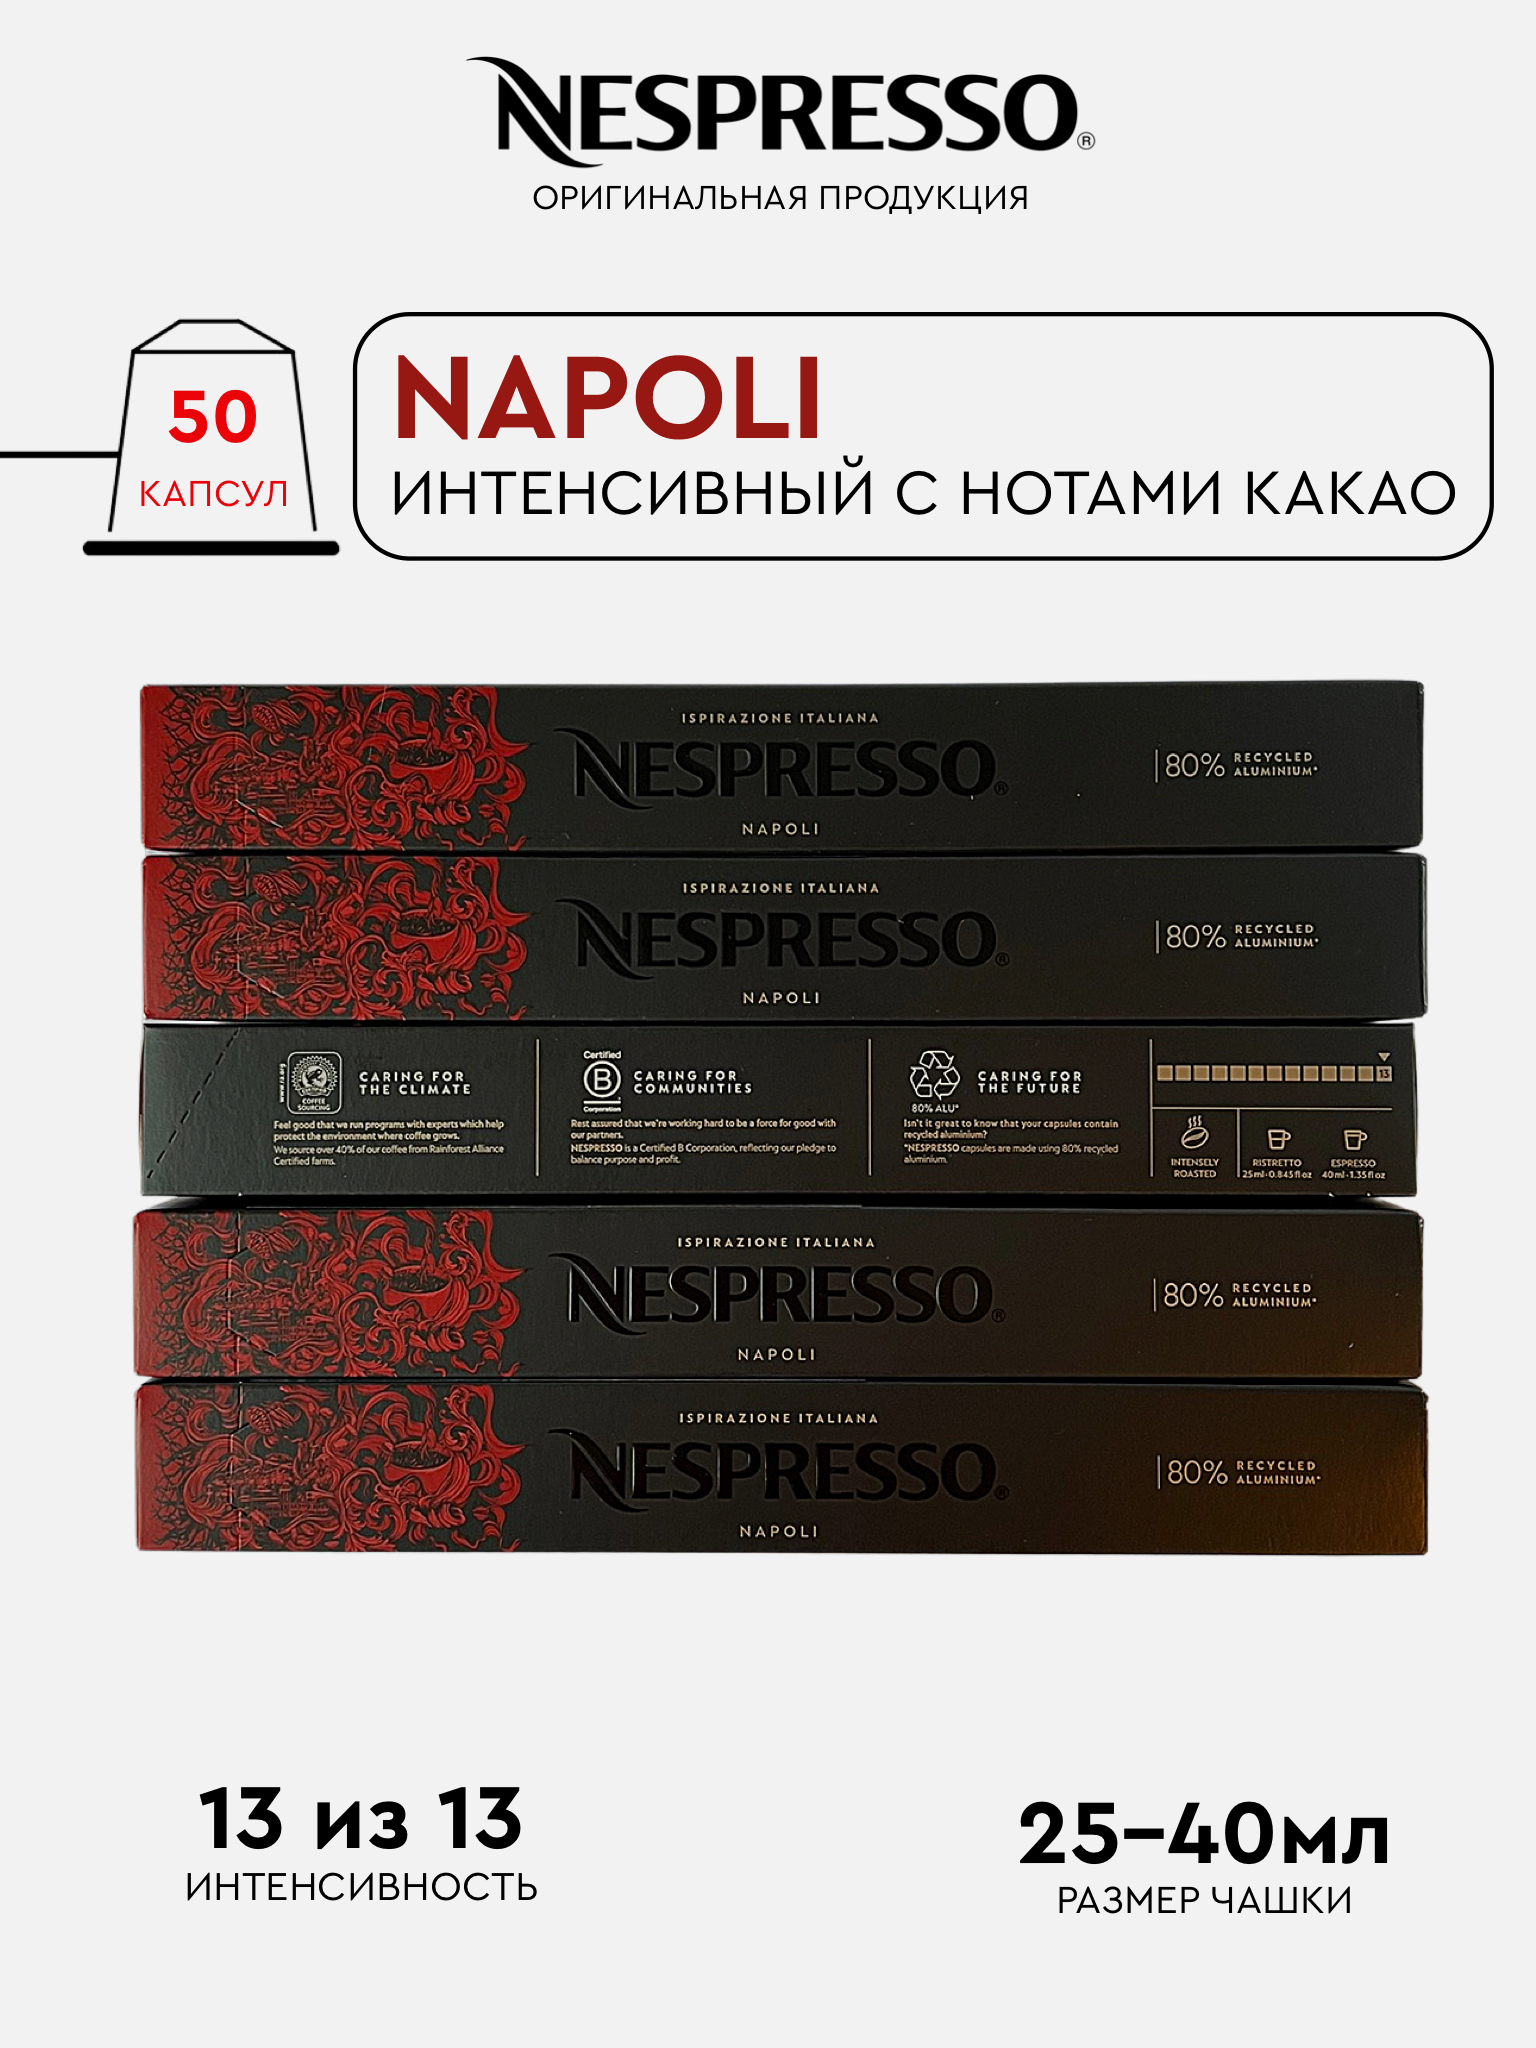 Капсулы Nespresso Napoli для кофемашины Nespresso Original, 50 капсул